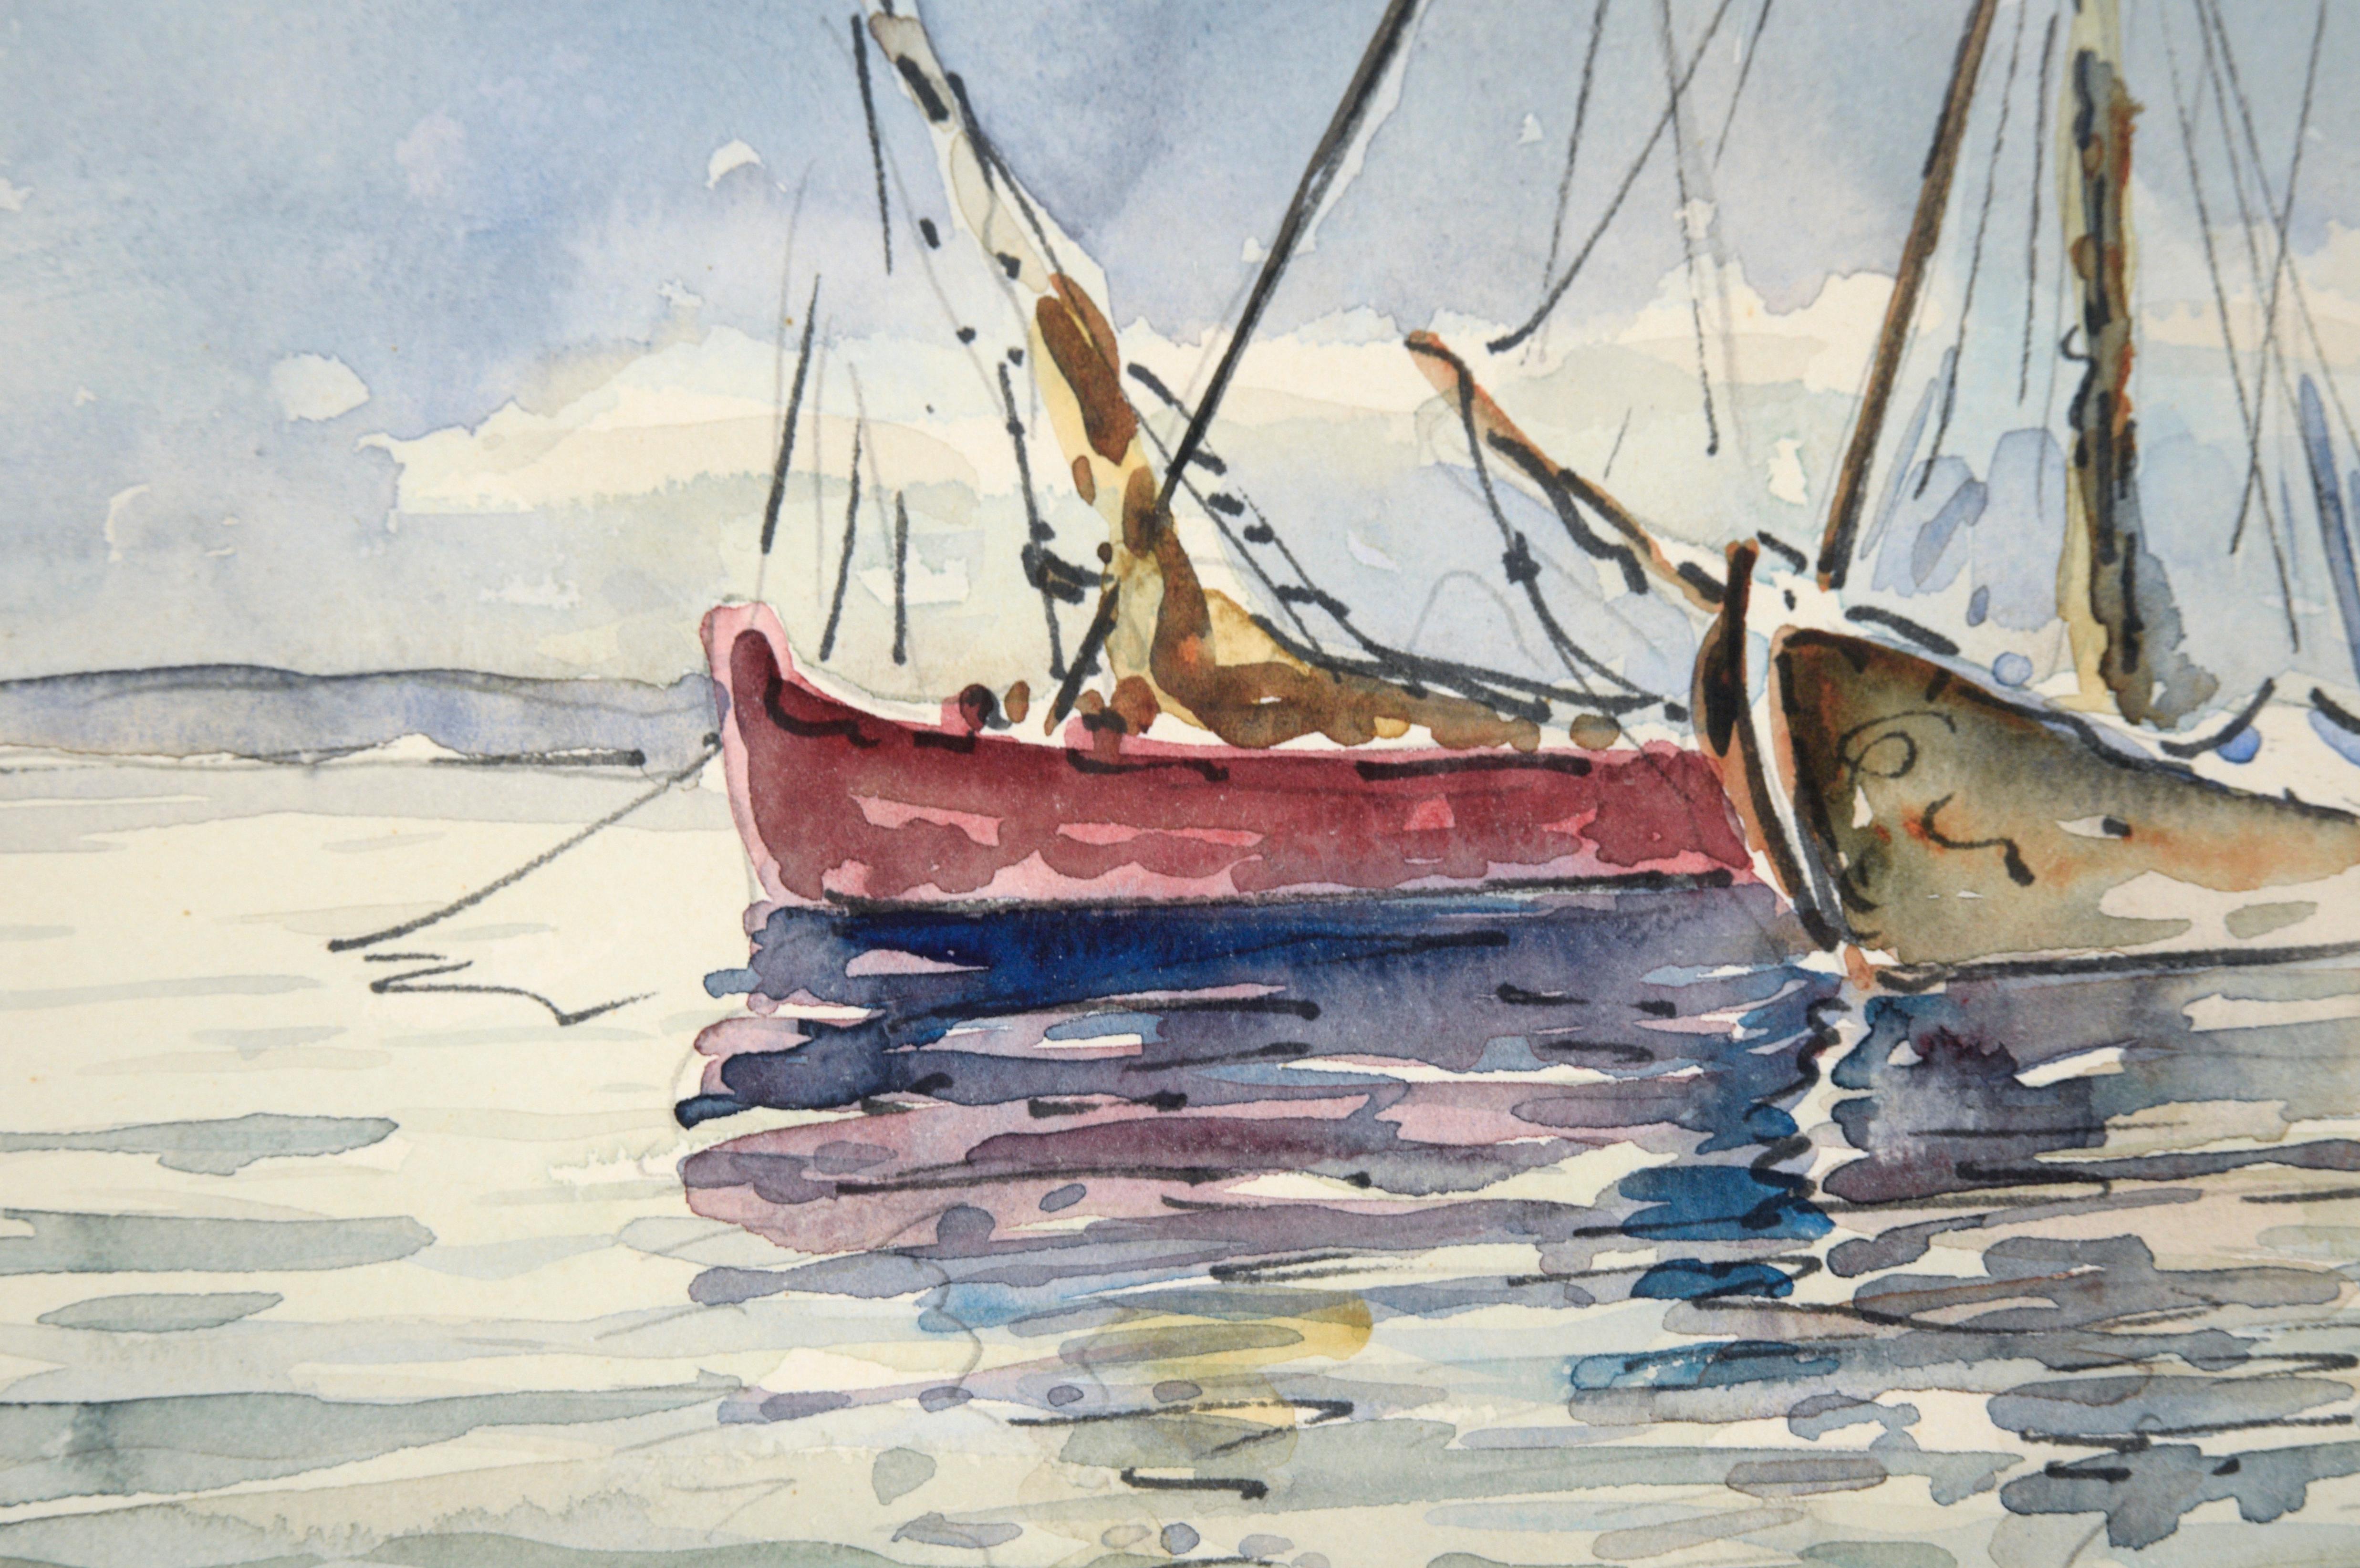 Représentation sereine de deux voiliers par un artiste inconnu (20e siècle). Deux bateaux sont ancrés dans une eau verdâtre. Le ciel bleu, avec quelques nuages gonflés, occupe environ deux tiers de la composition. Les reflets des voiliers dans